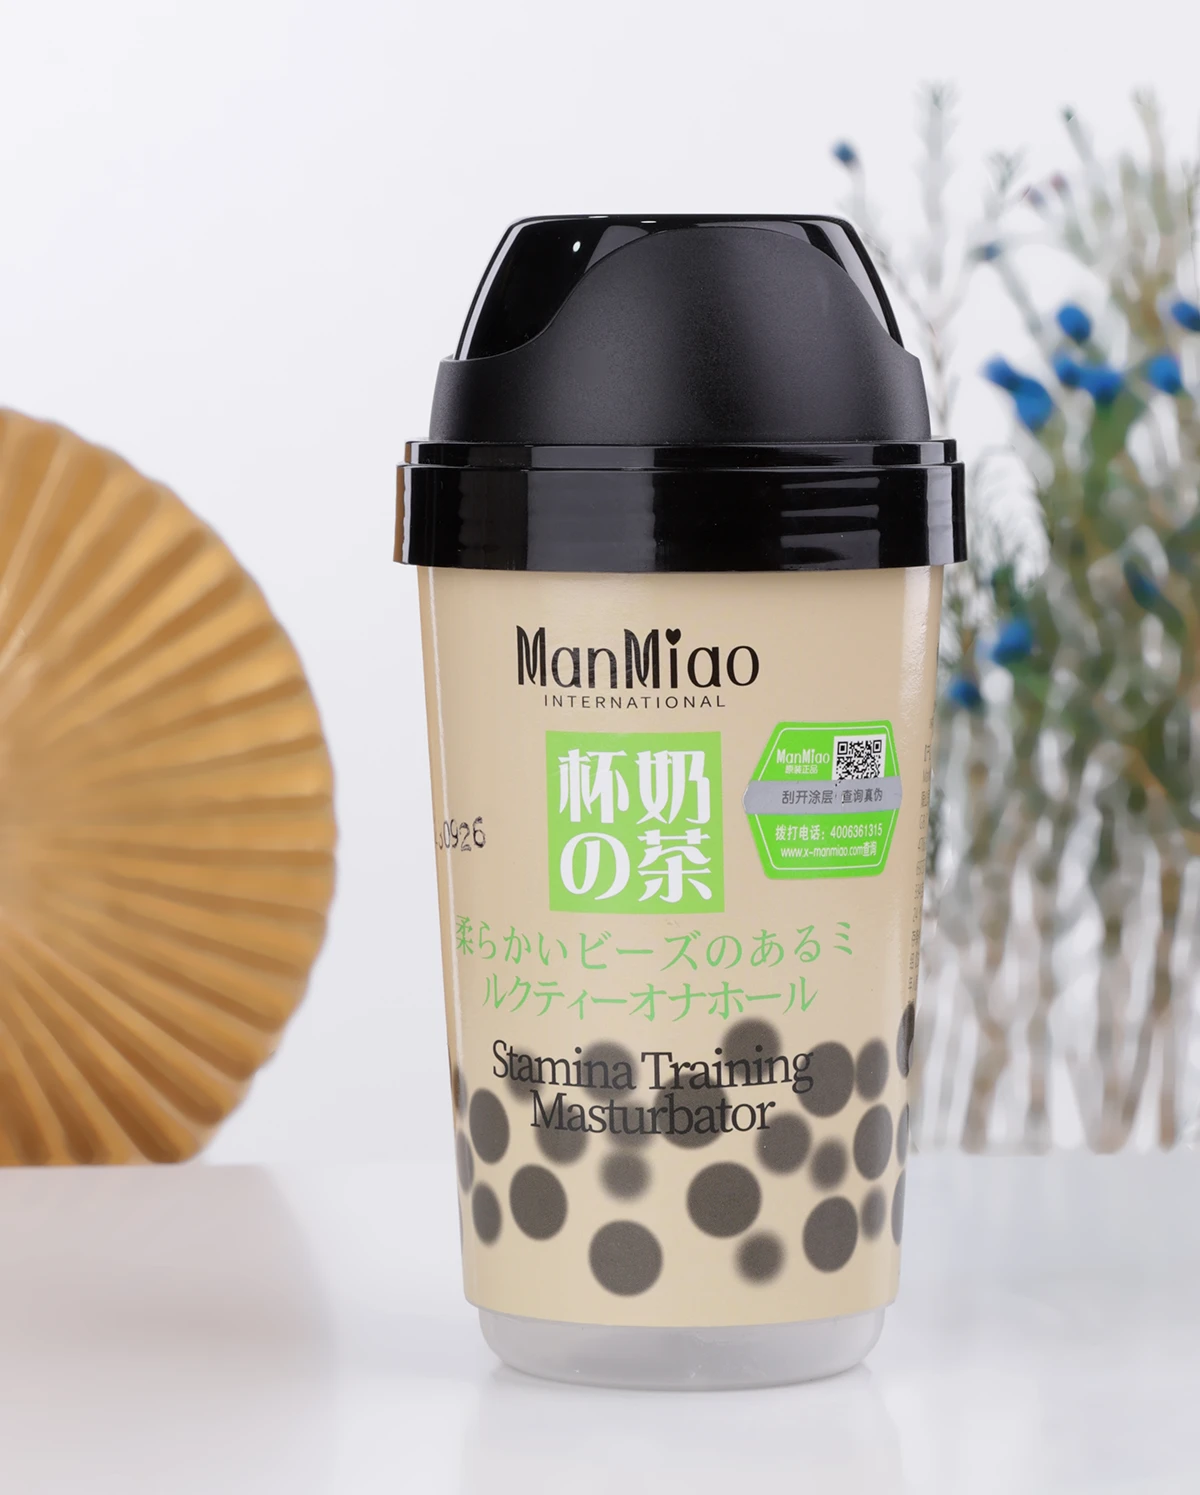 Bảng giá Cốc thủ dâm Manmiao Stamina Training thiết kế nguỵ trang ly trà sữa có hạt trân châu nhập khẩu